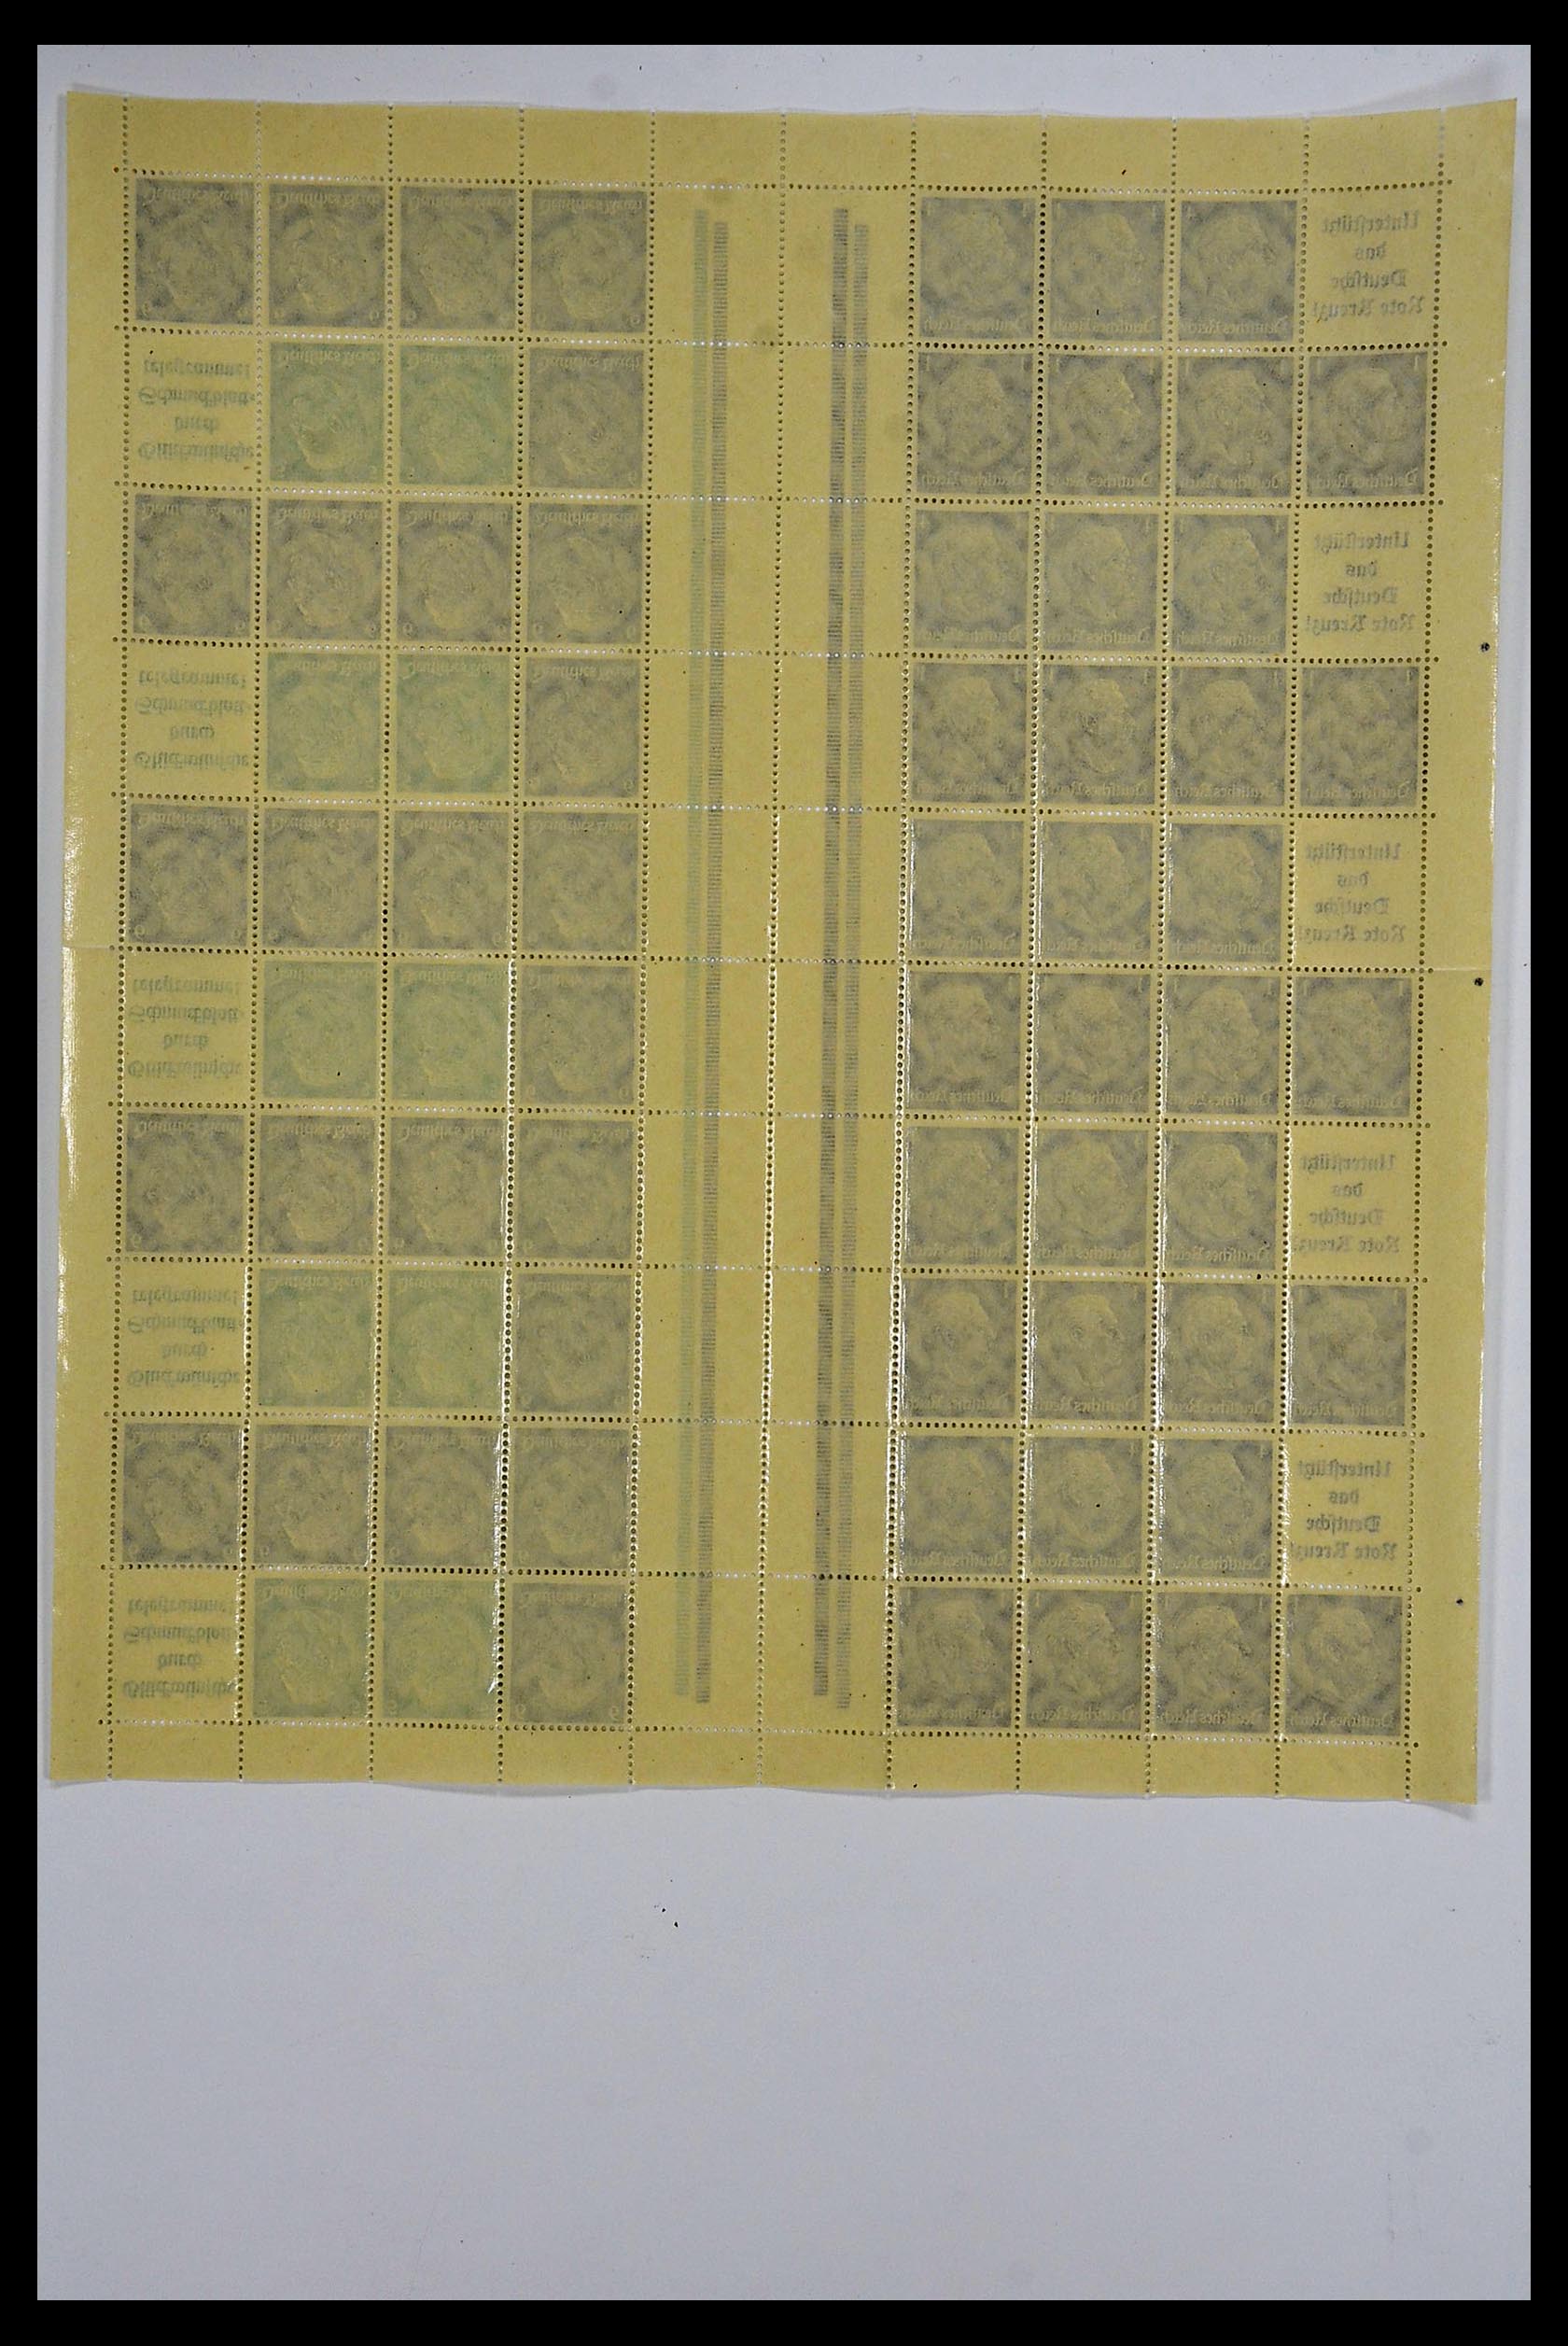 34164 046 - Stamp collection 34164 German Reich Markenheftchenbogen 1933-1942.